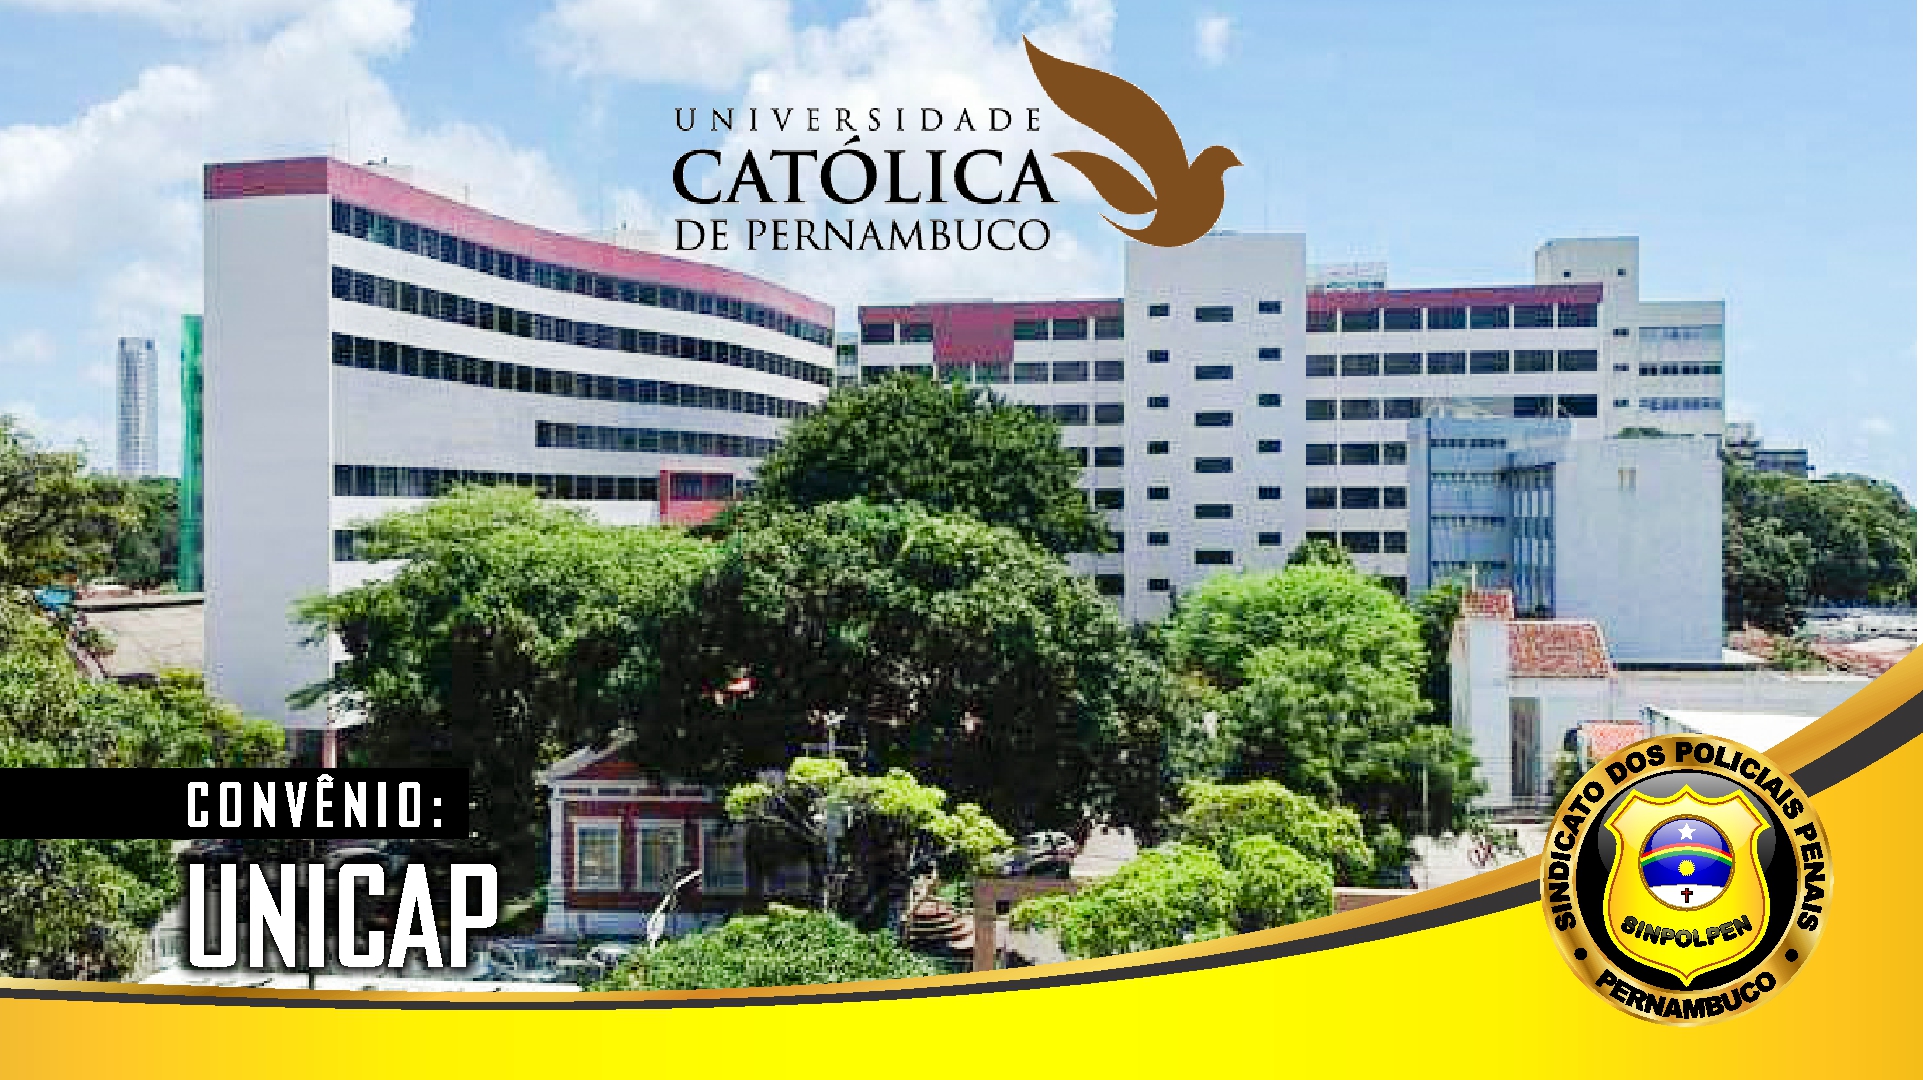 Torneio de Jogos de Salão - Unicap - Universidade Católica de Pernambuco